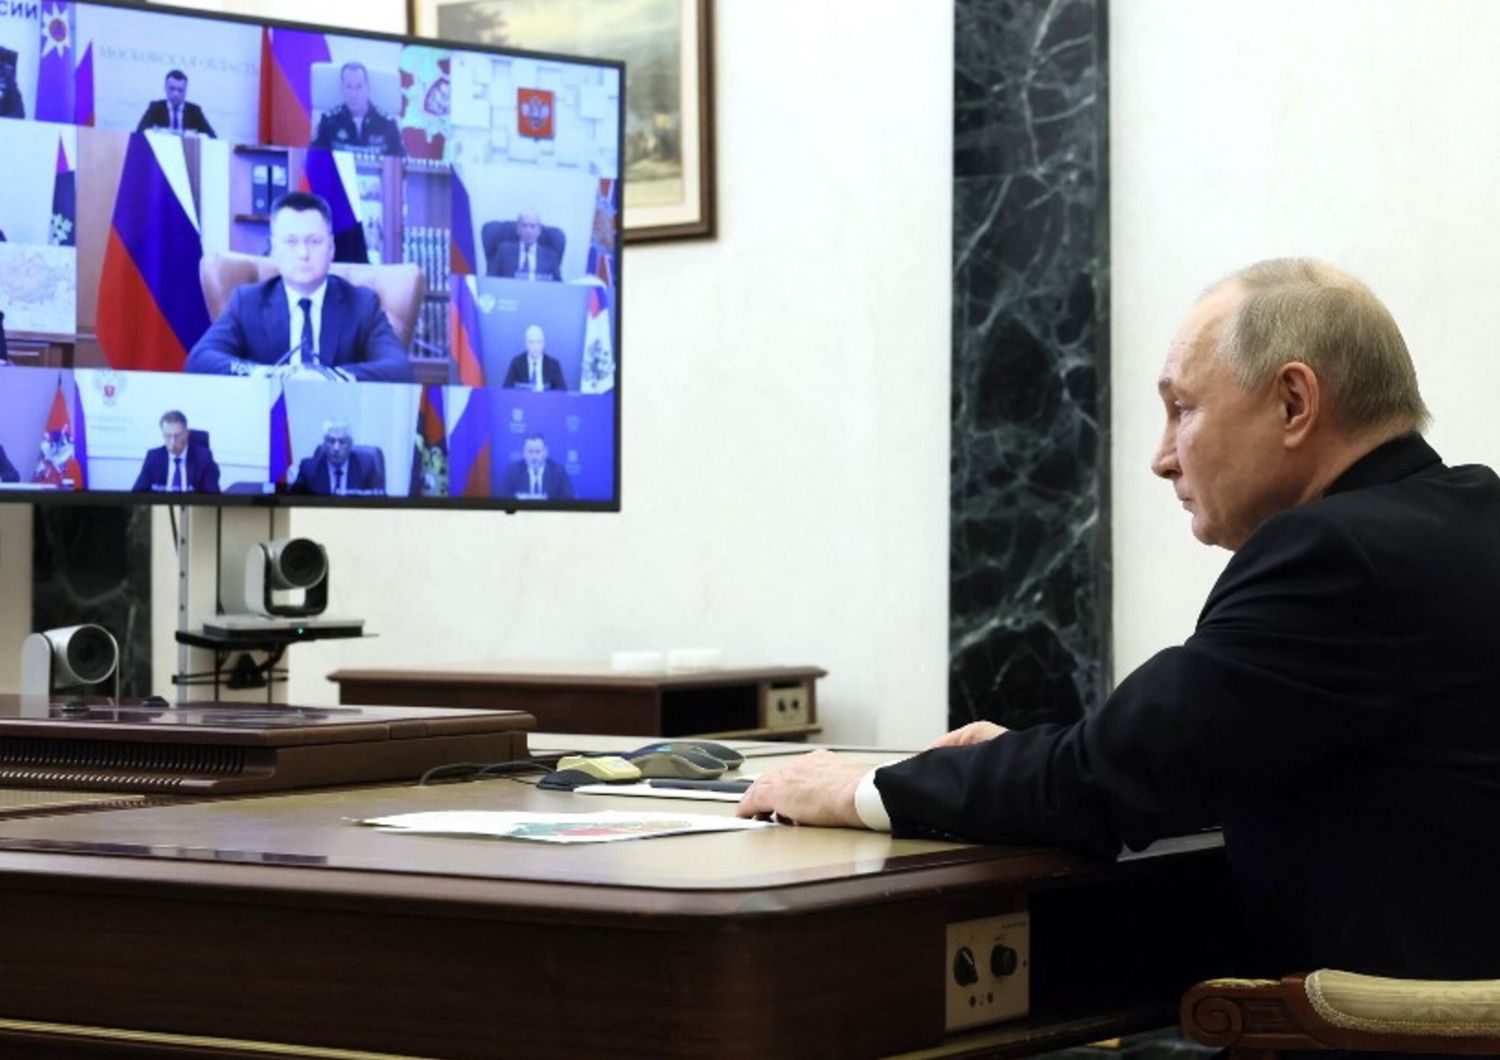 Riunione del presidente russo Putin sulle misure adottate dopo la strage nel municipio di Crocus